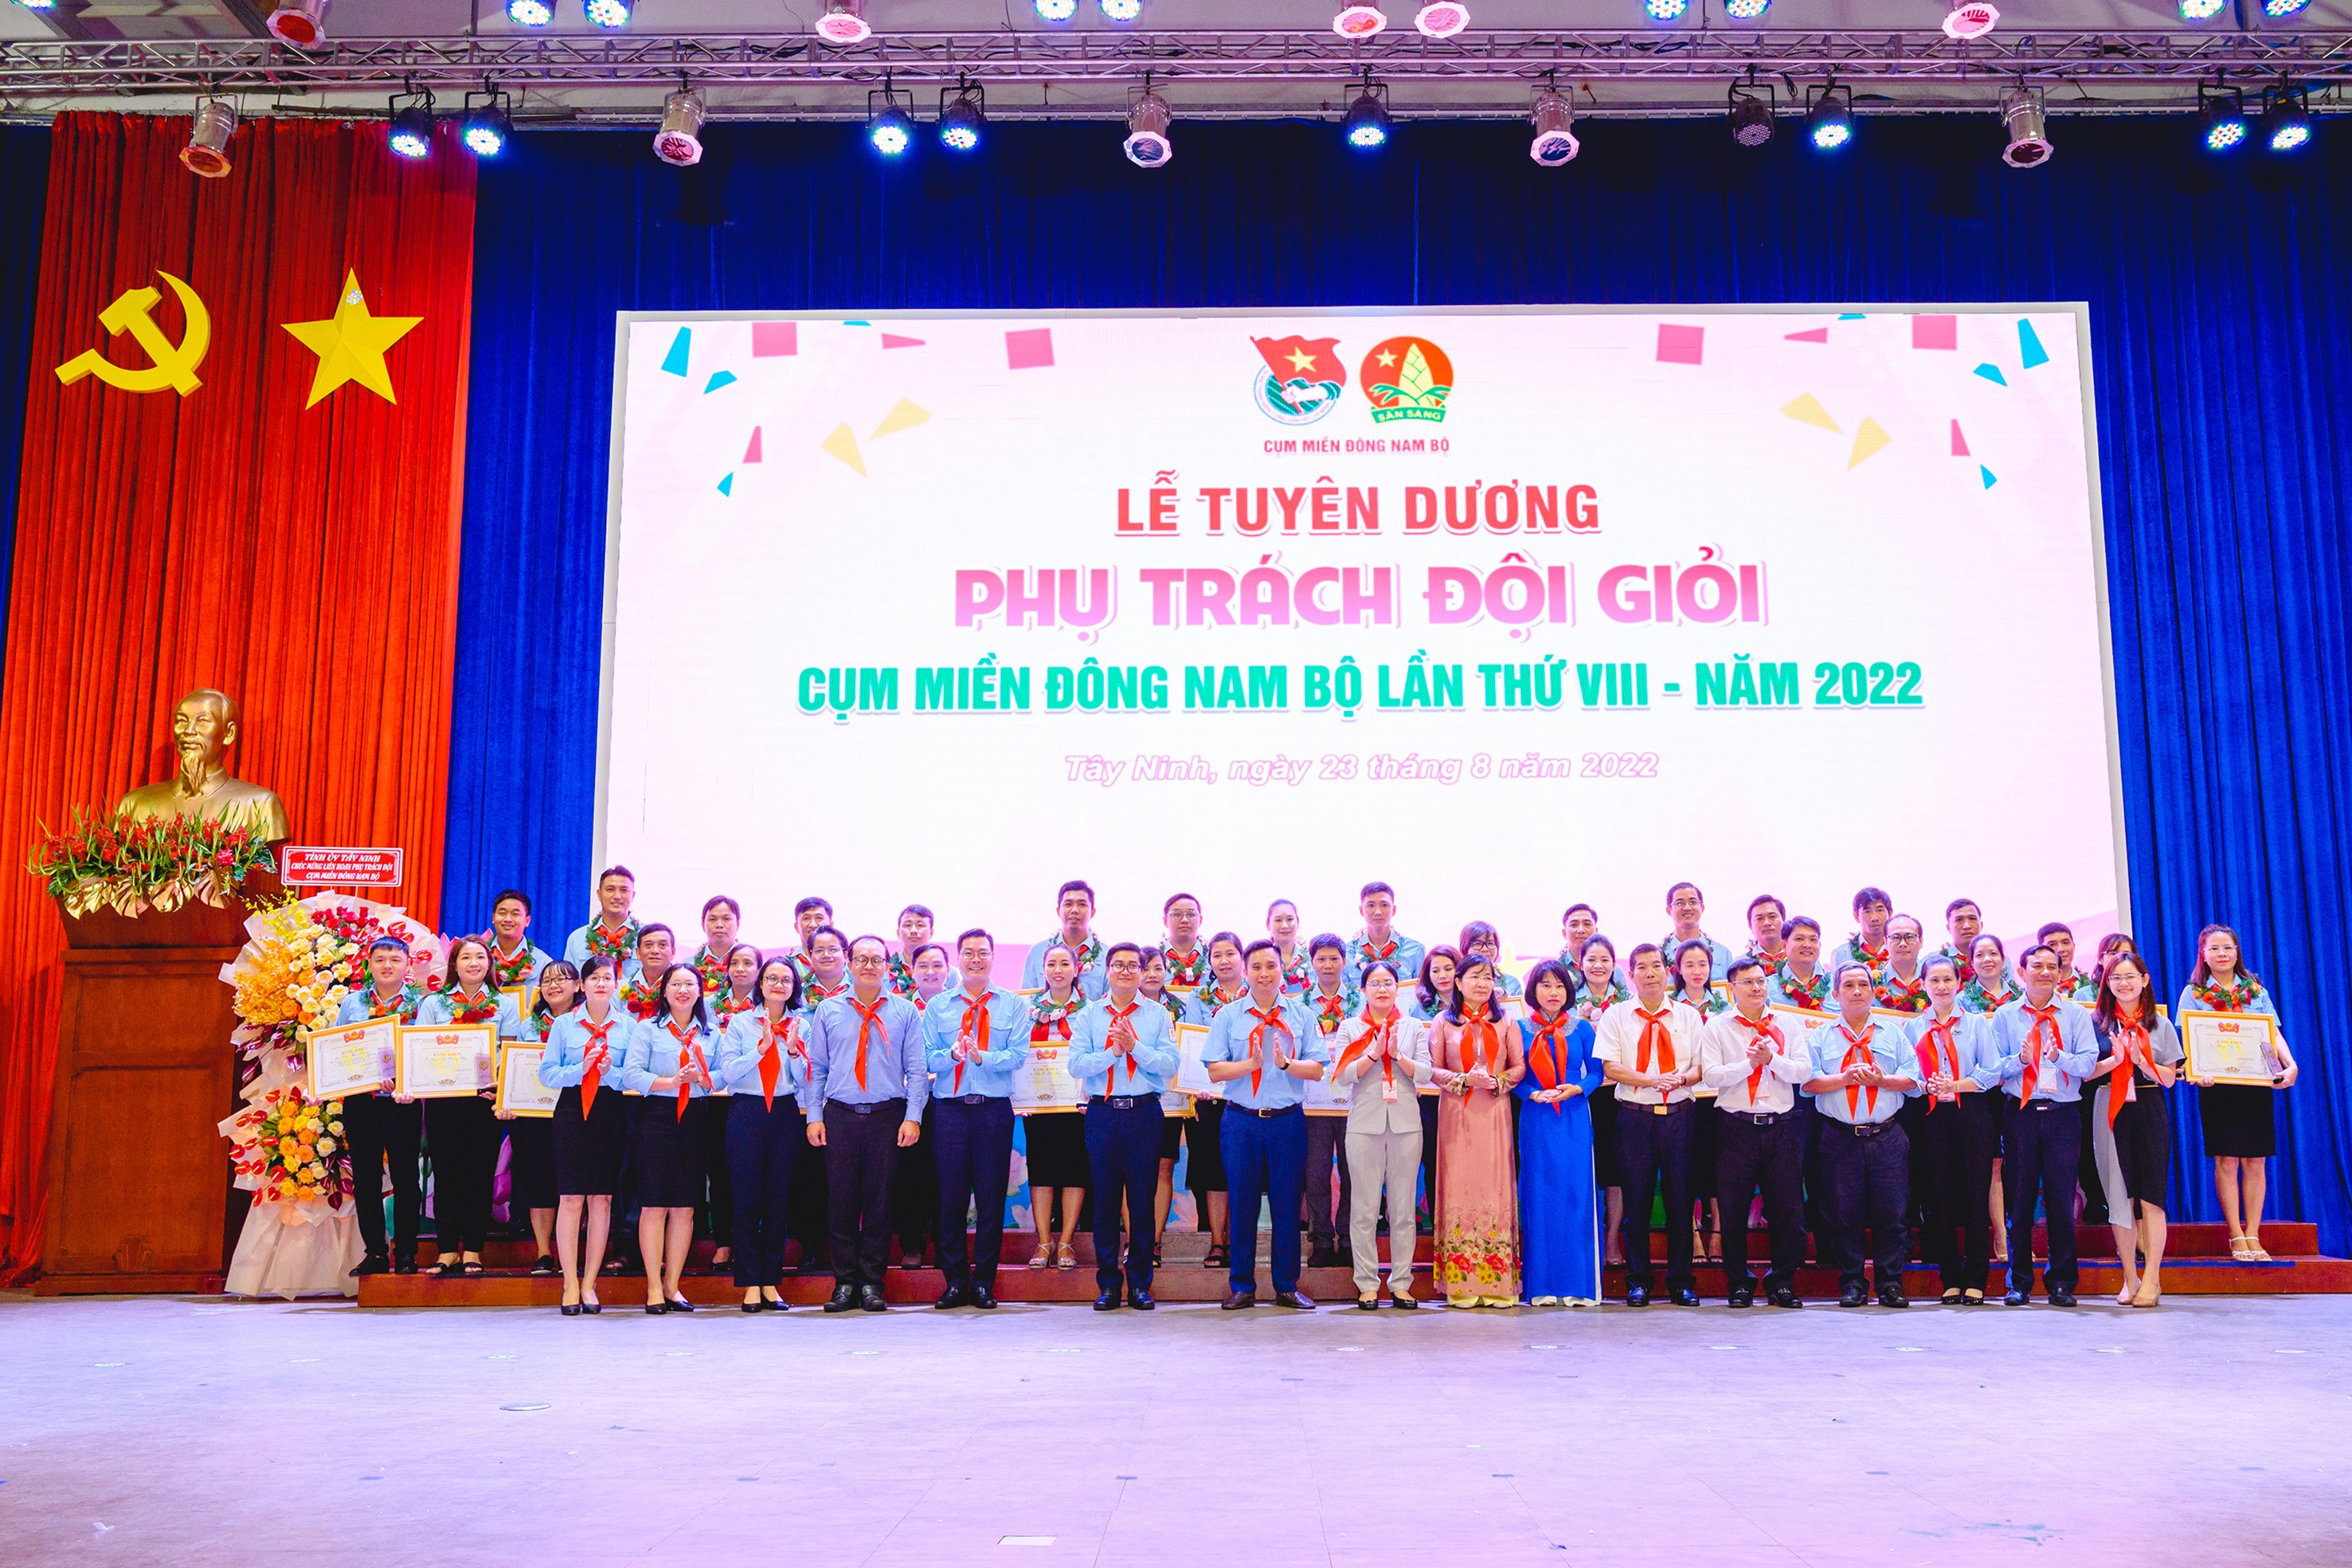 Tỉnh đoàn Tây Ninh long trọng tổ chức “Lễ tuyên dương Phụ Trách Đội giỏi cụm miền Đông Nam Bộ lần thứ VIII” năm 2022.